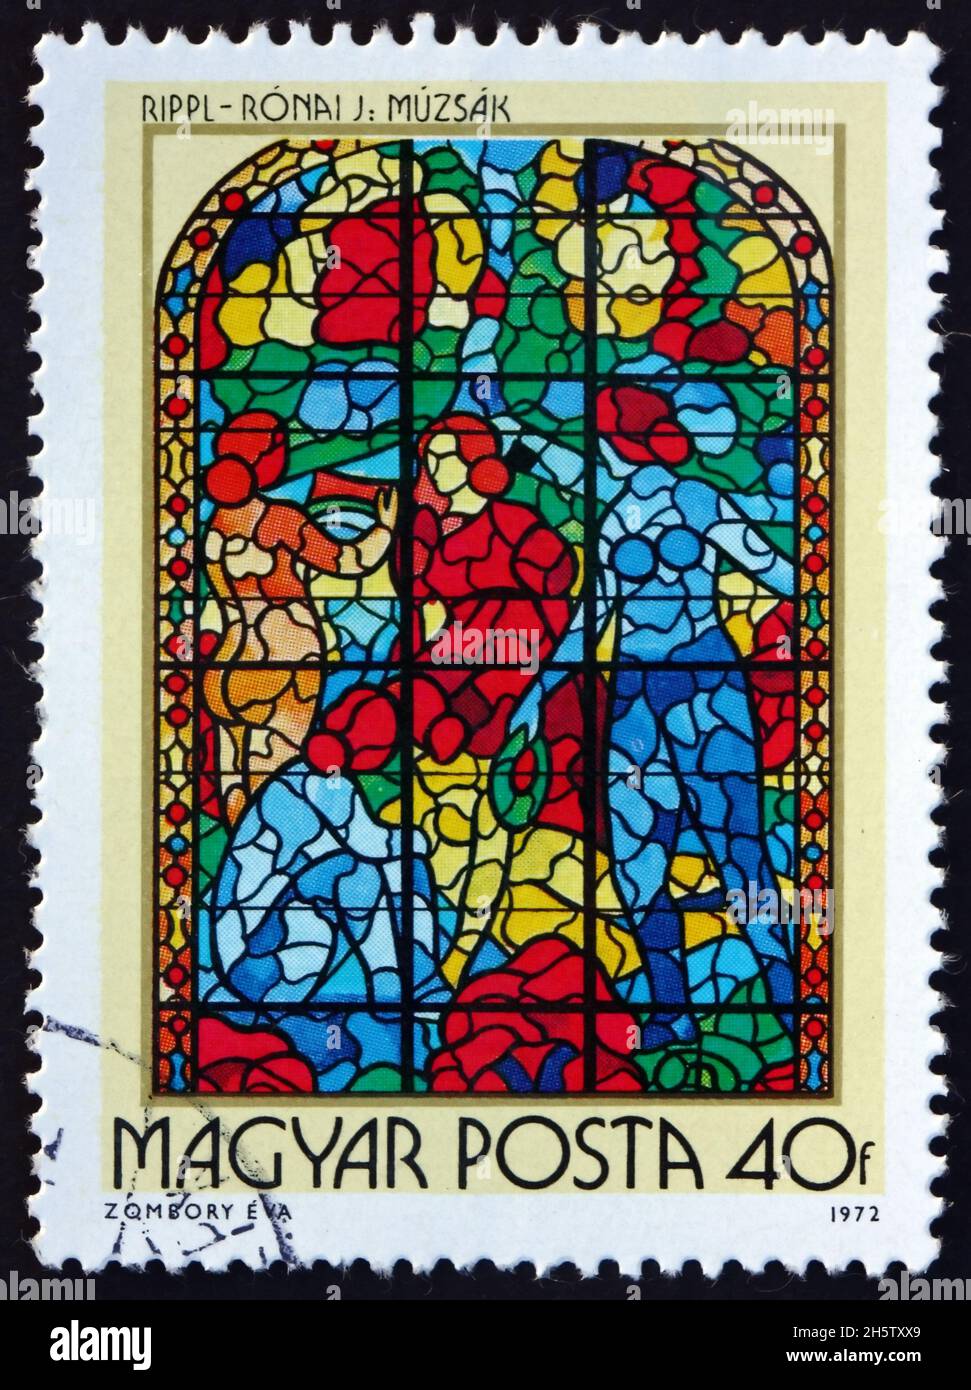 UNGARN - UM 1972: Eine in Ungarn gedruckte Briefmarke zeigt Musen, Buntglasfenster von Jozsef Rippl-Ronai, ungarischer Maler, um 1972 Stockfoto